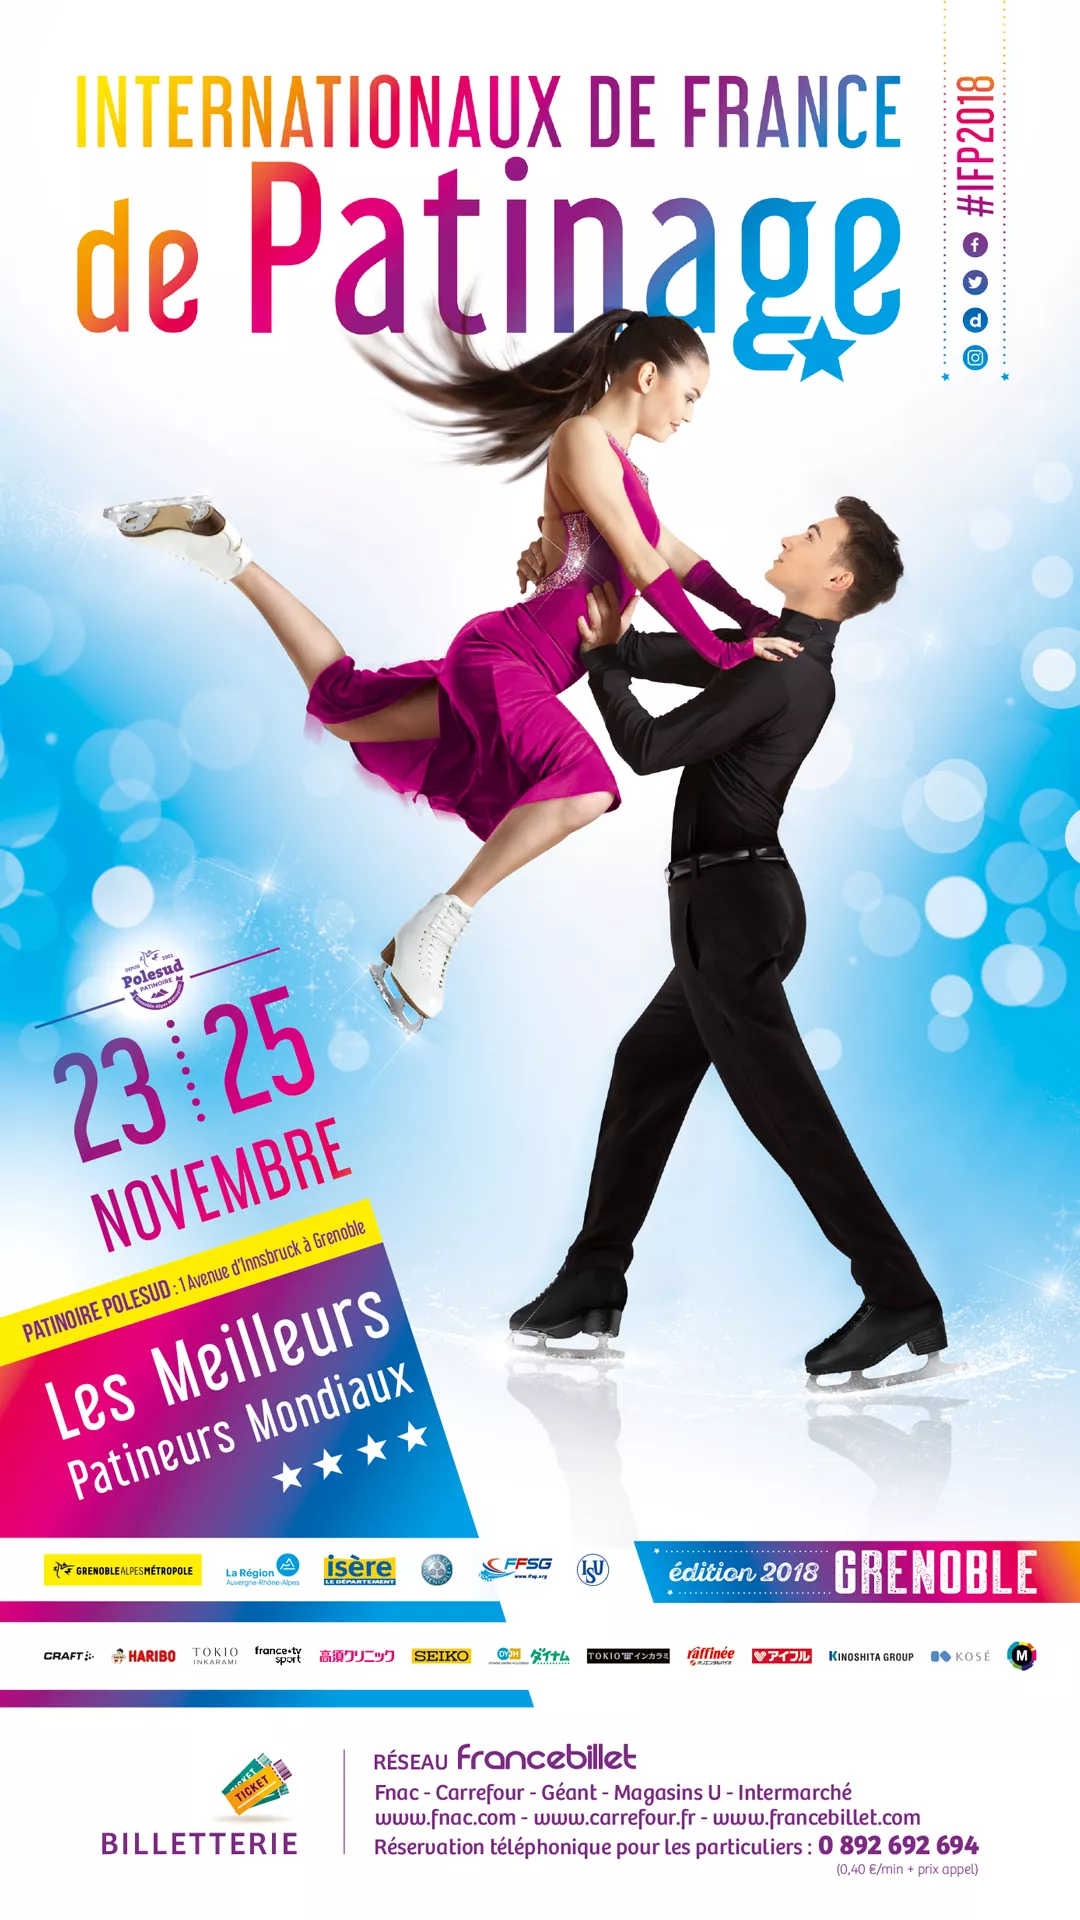 Internationaux de France de Patinage artistique et Danse sur glace Du vendredi 23 au dimanche 25 novembre